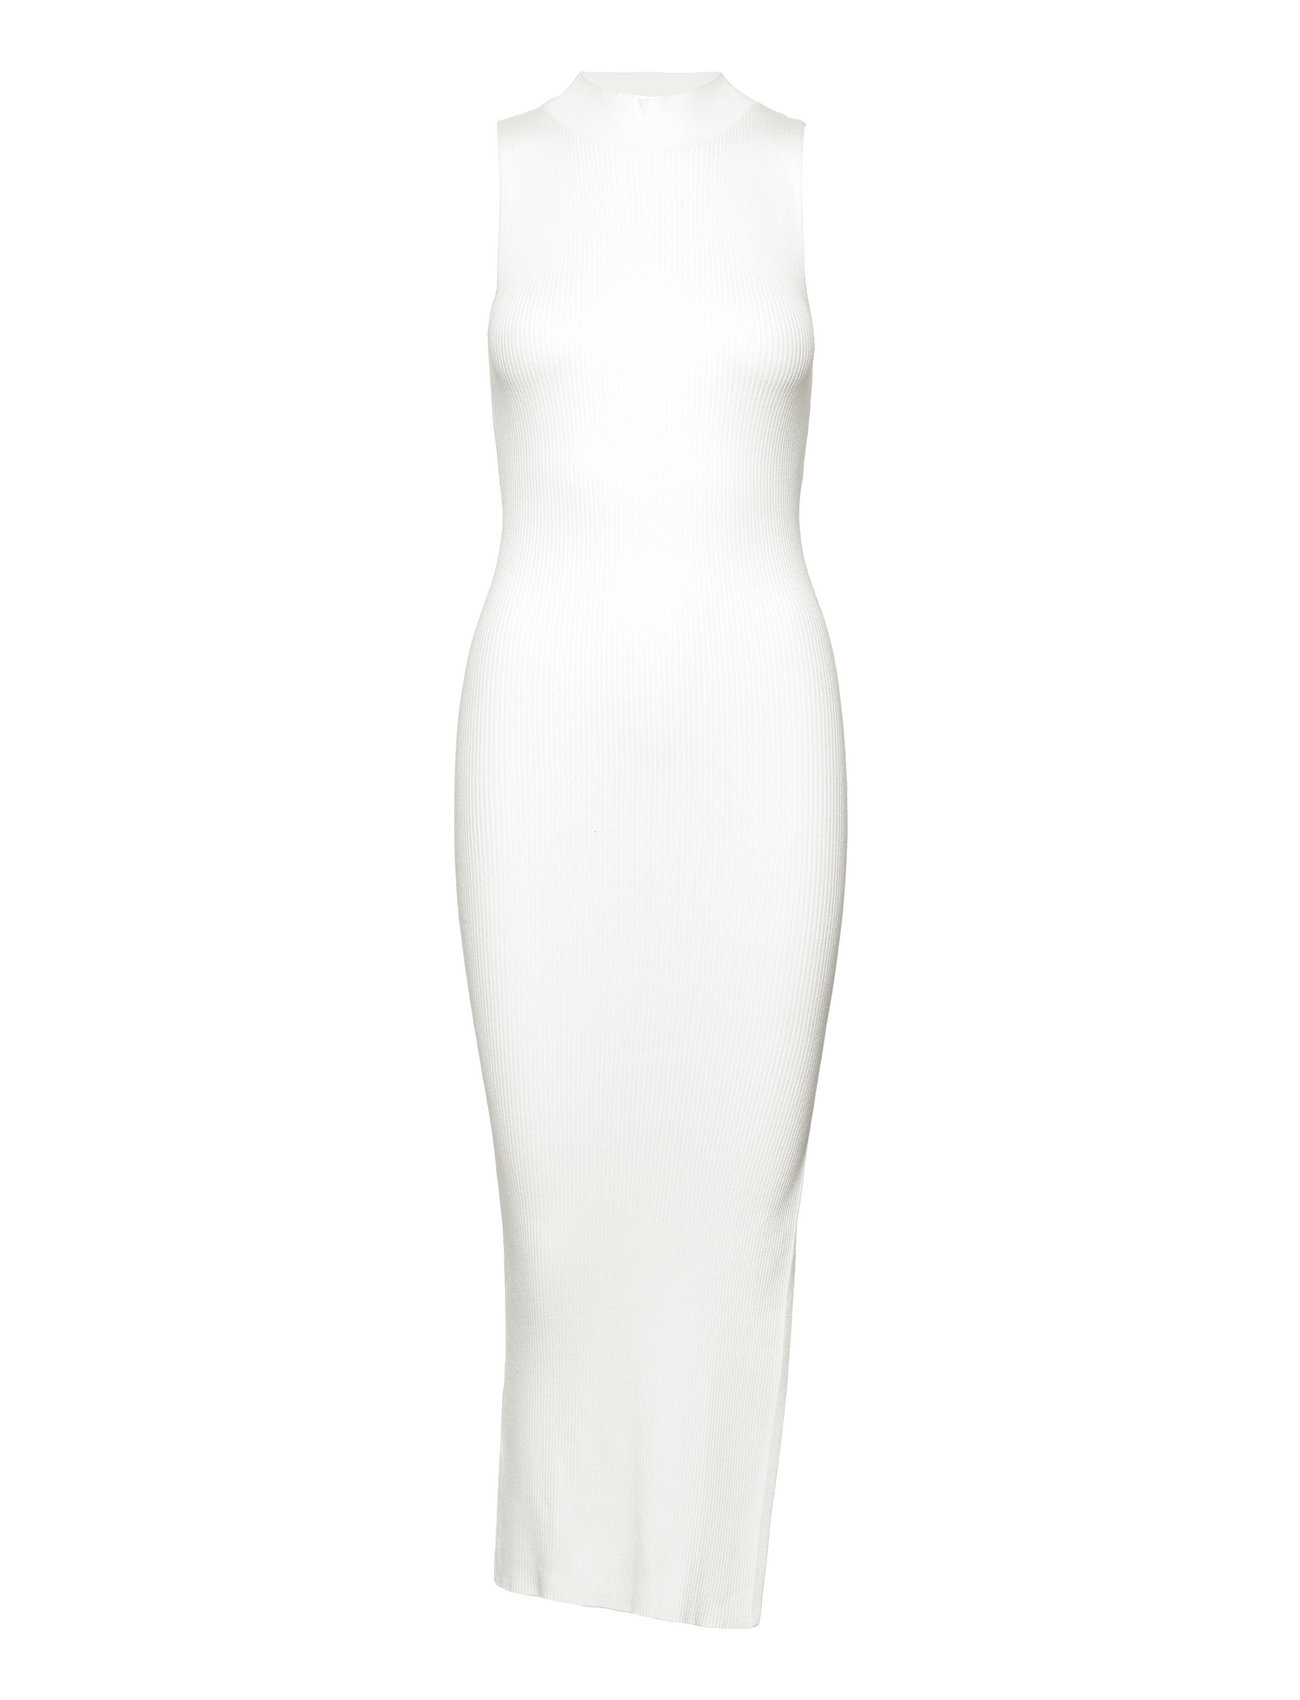 Spole tilbage efterspørgsel fornærme Mango Ribbed Knit Dress With Opening (Ecru), 169.47 kr | Stort udvalg af  designer mærker | Booztlet.com